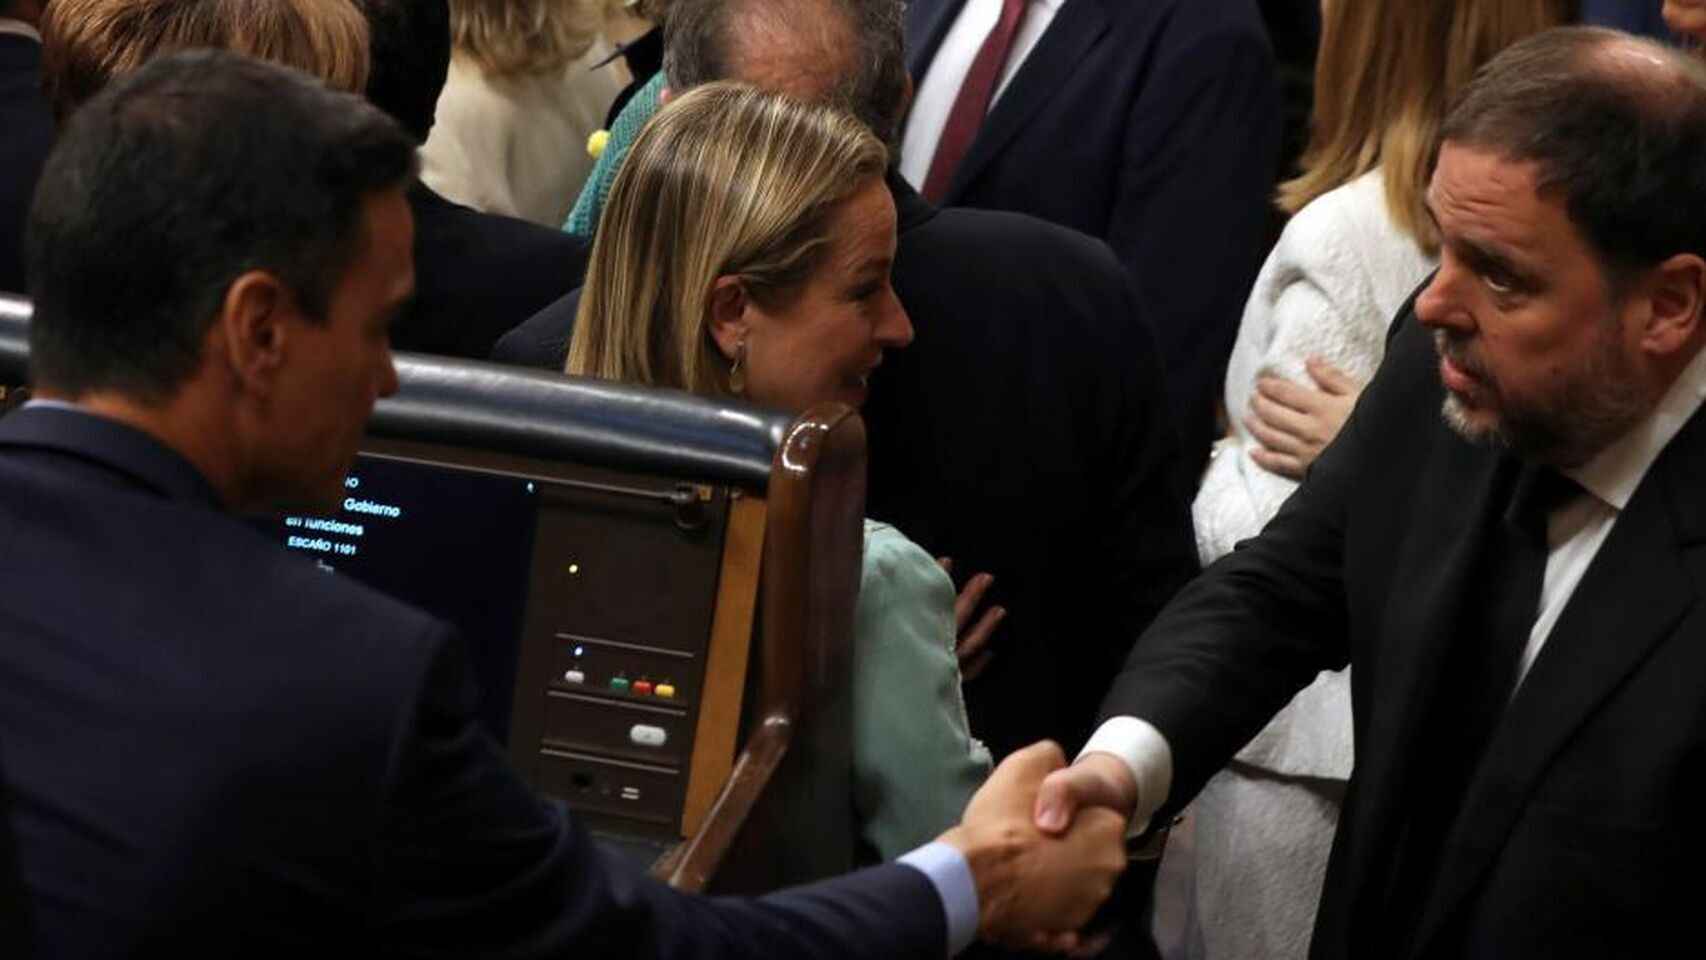 Pedro Sánchez y Oriol Junqueras se saludan en el Congreso.